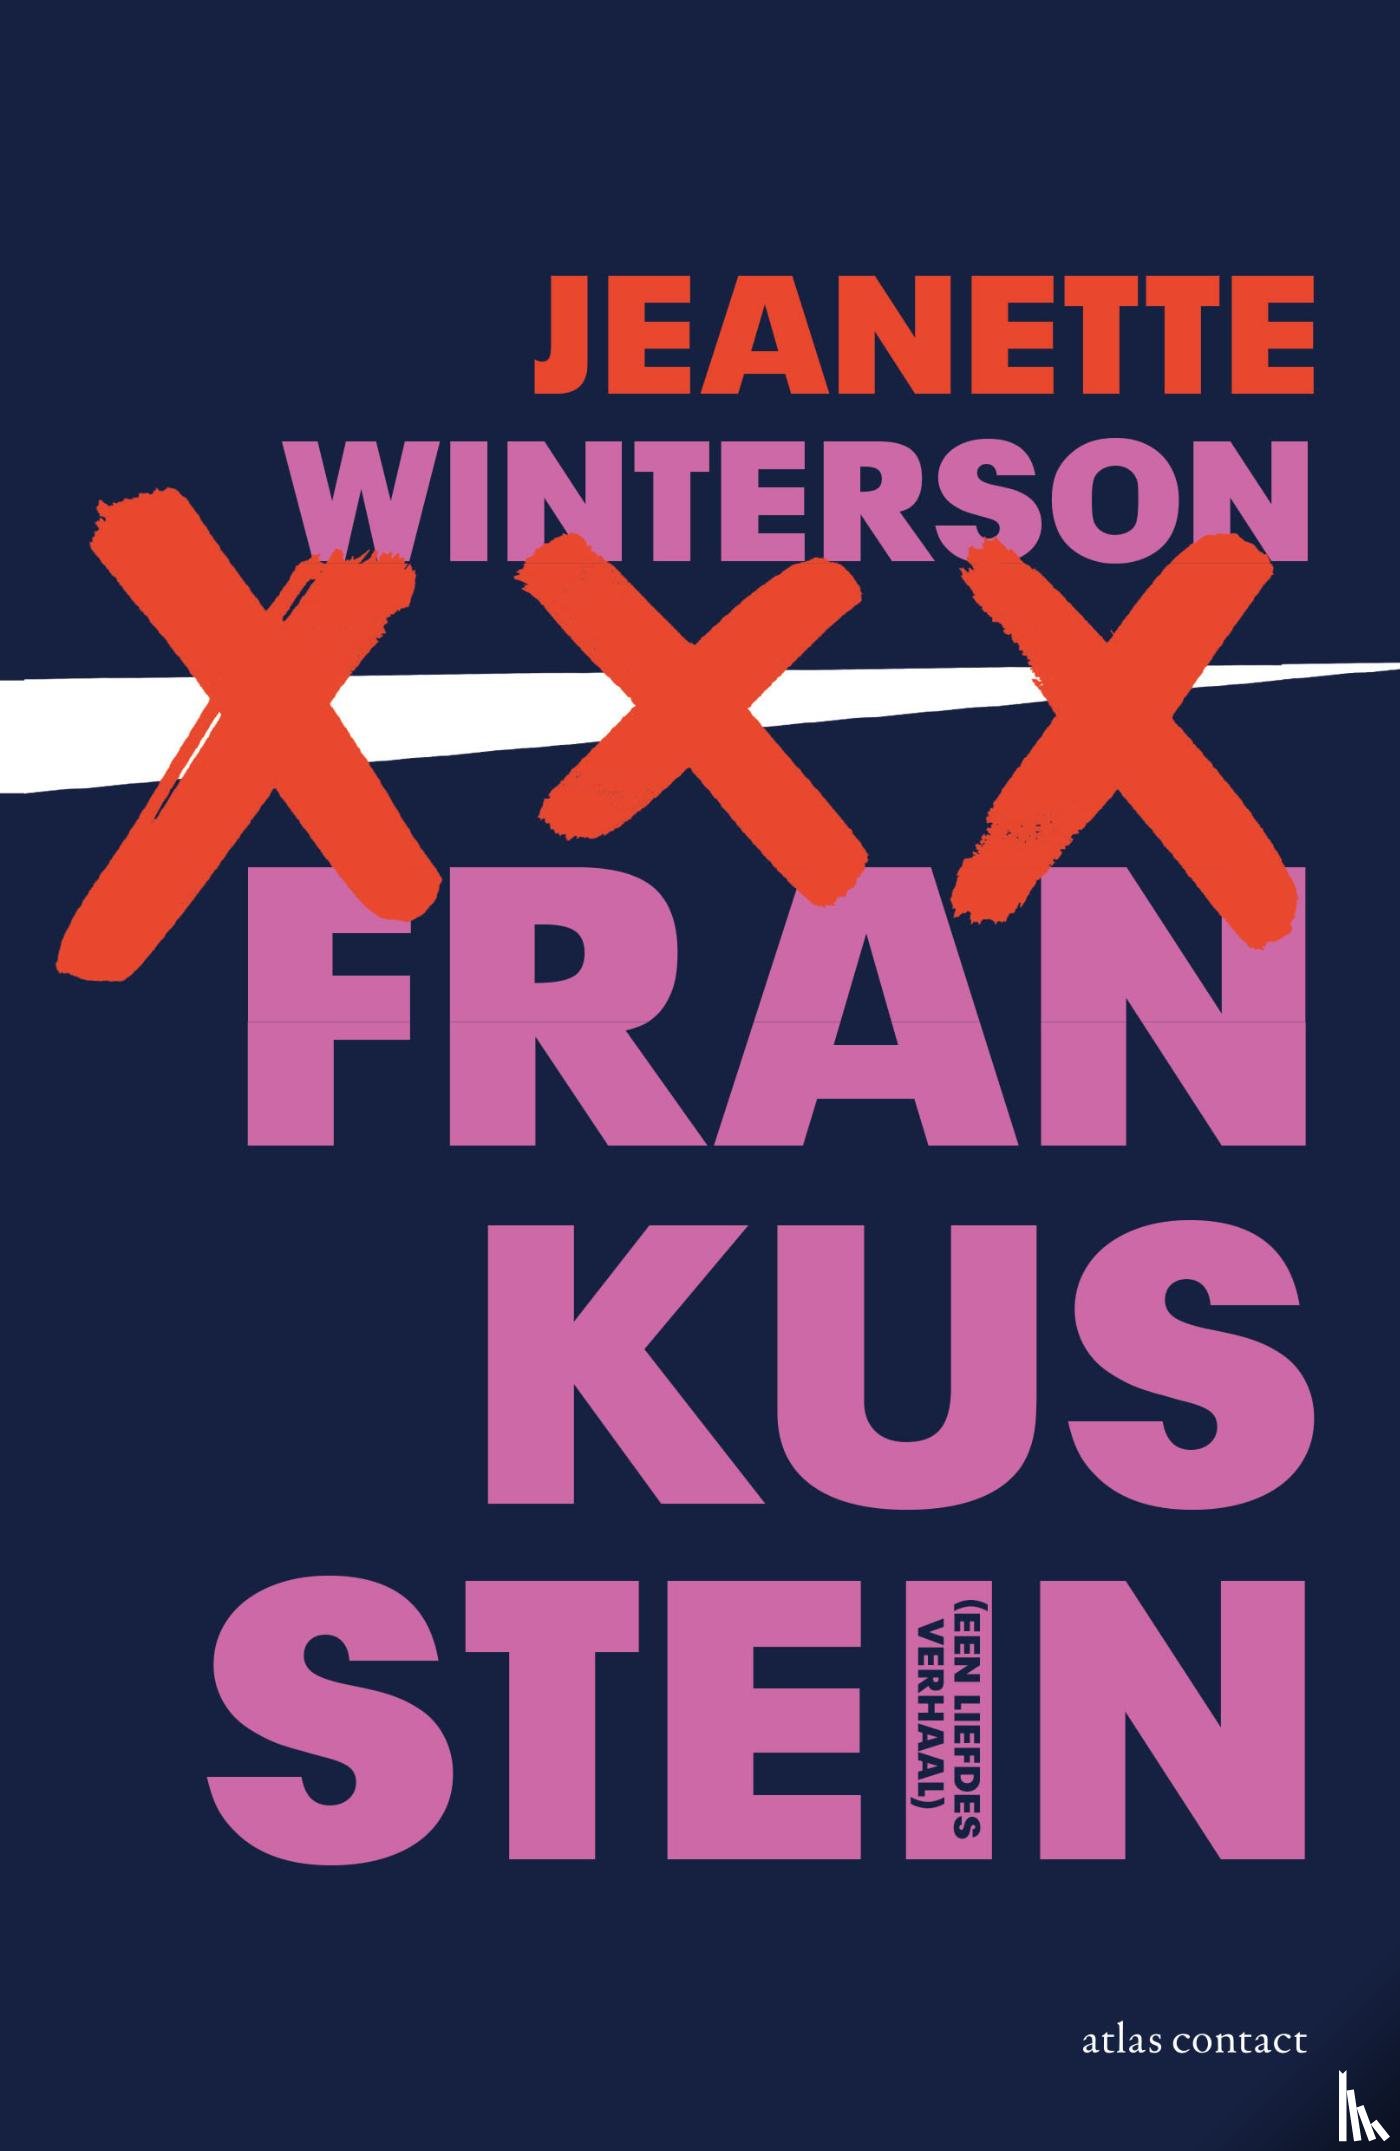 Winterson, Jeanette - Frankusstein